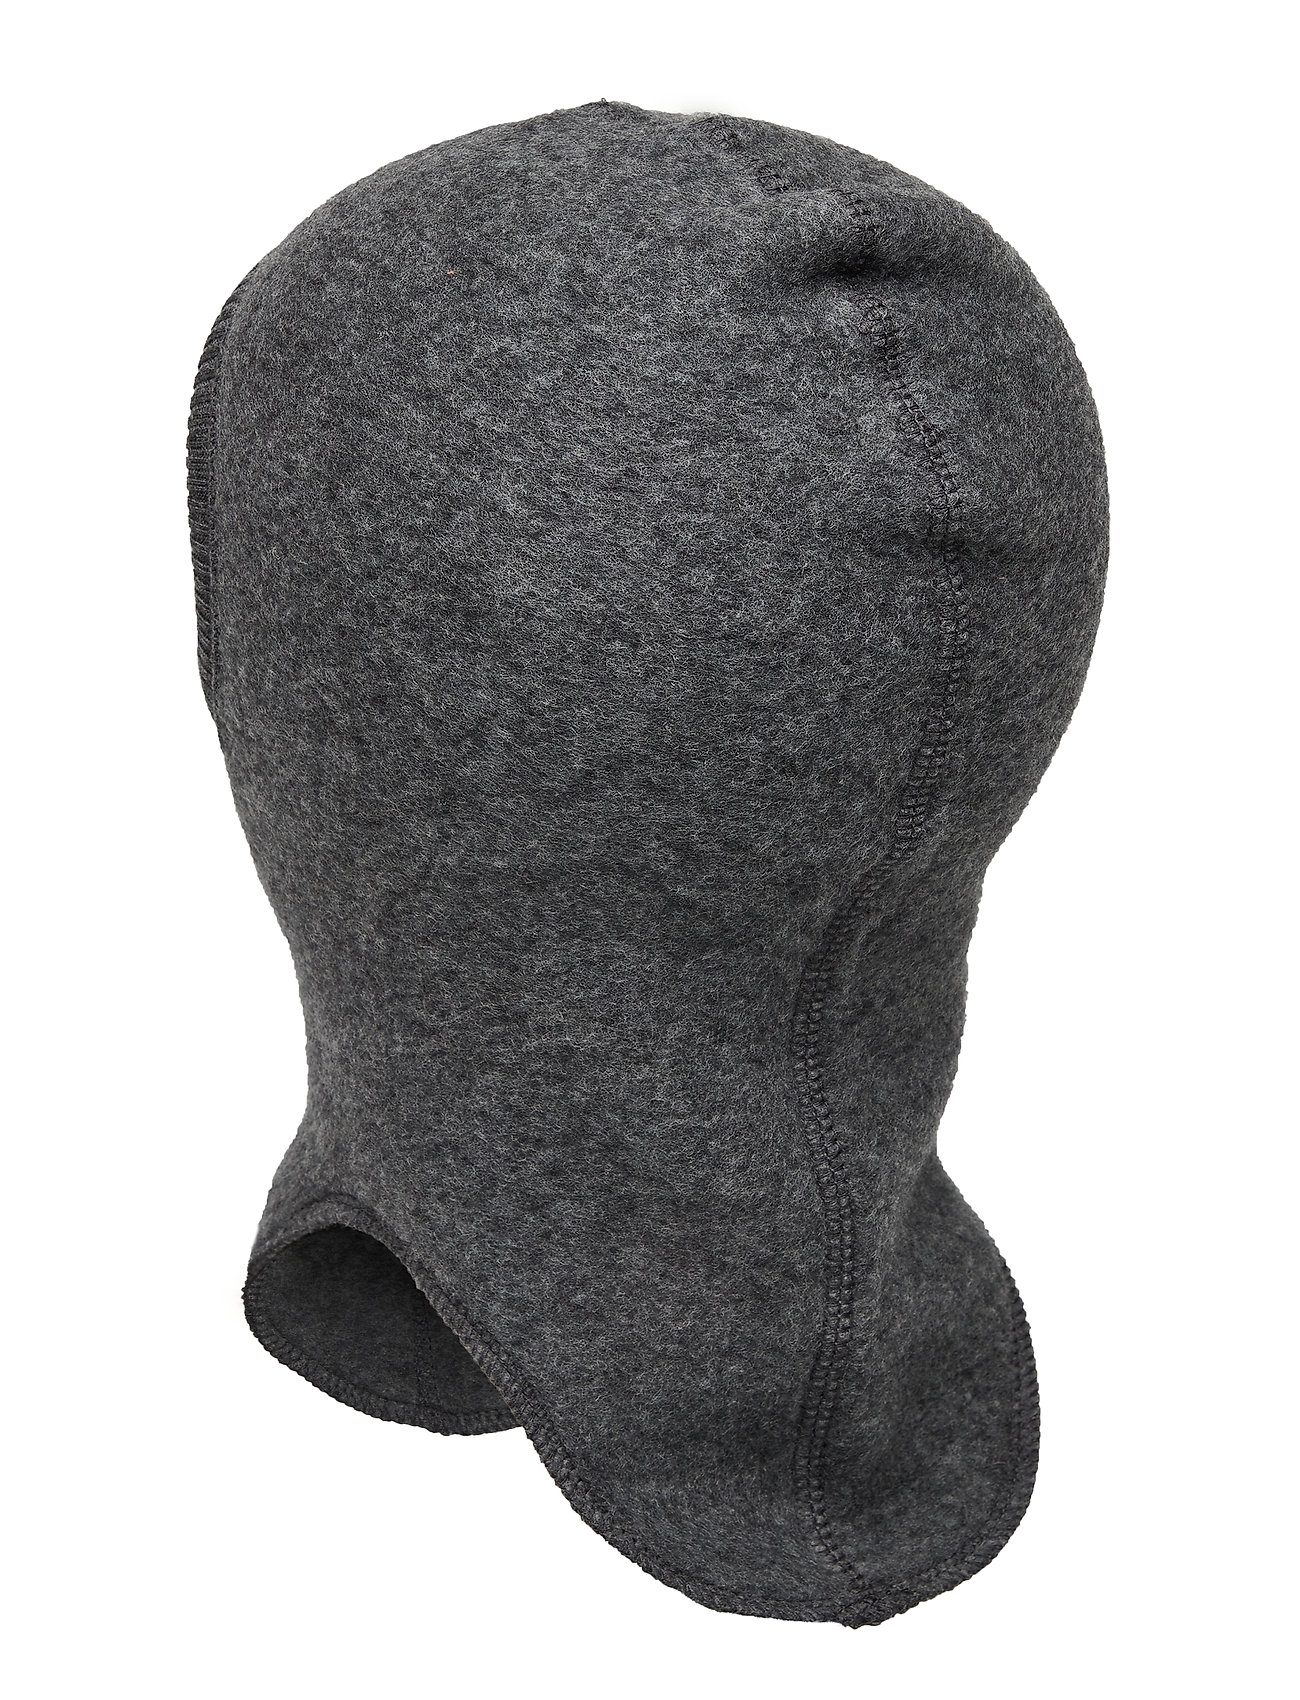 Wool Fullface Accessories Headwear Balaclava Grå Mikk-Line